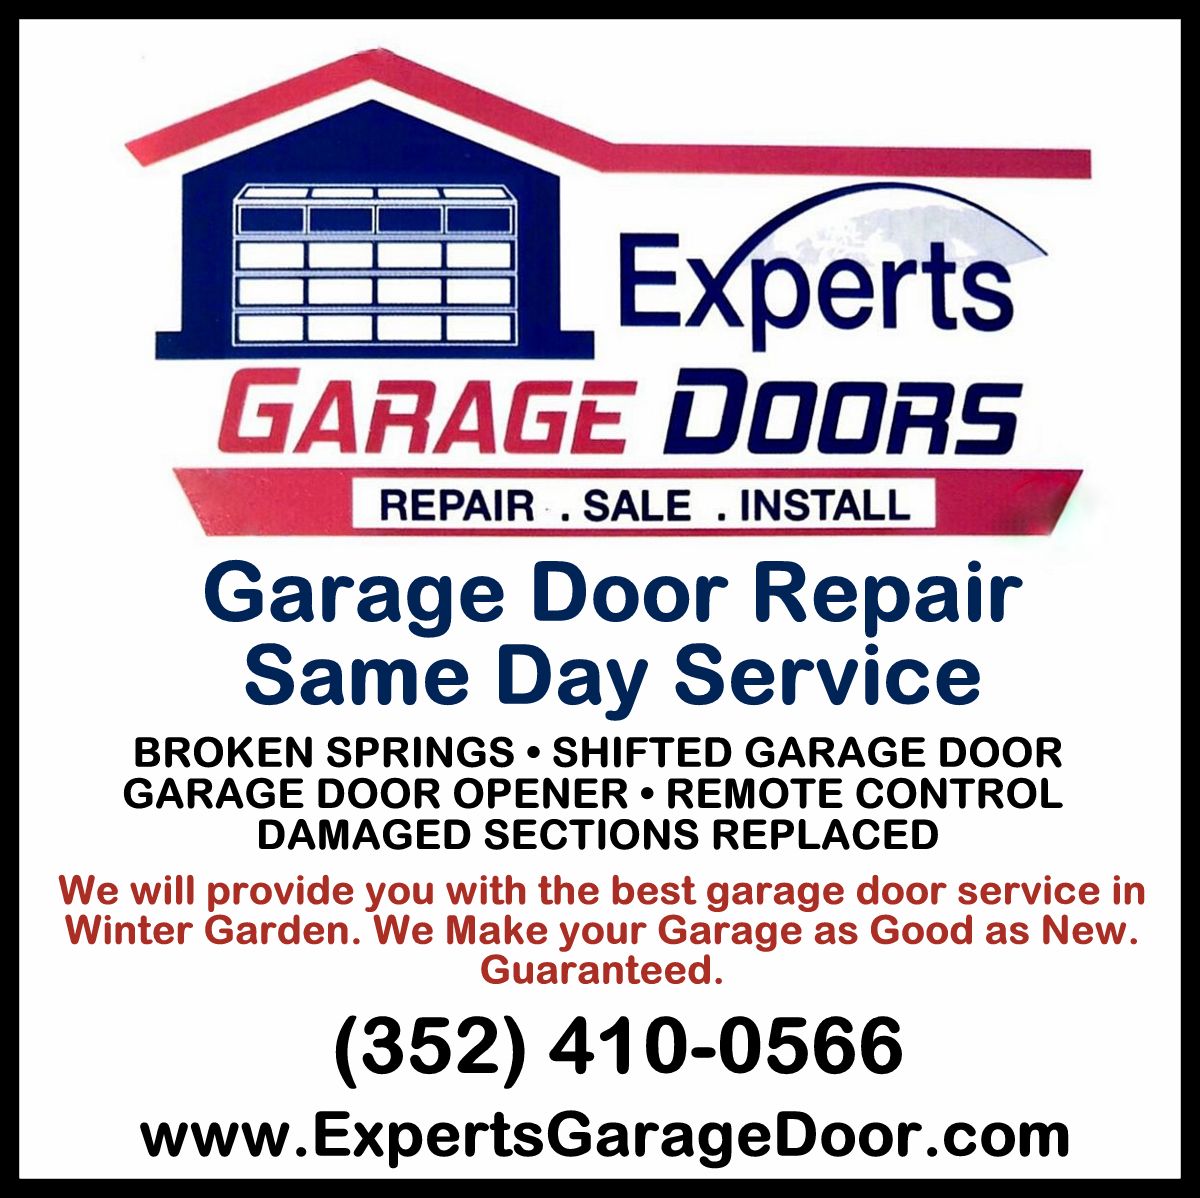 Experts Garage Doors ad